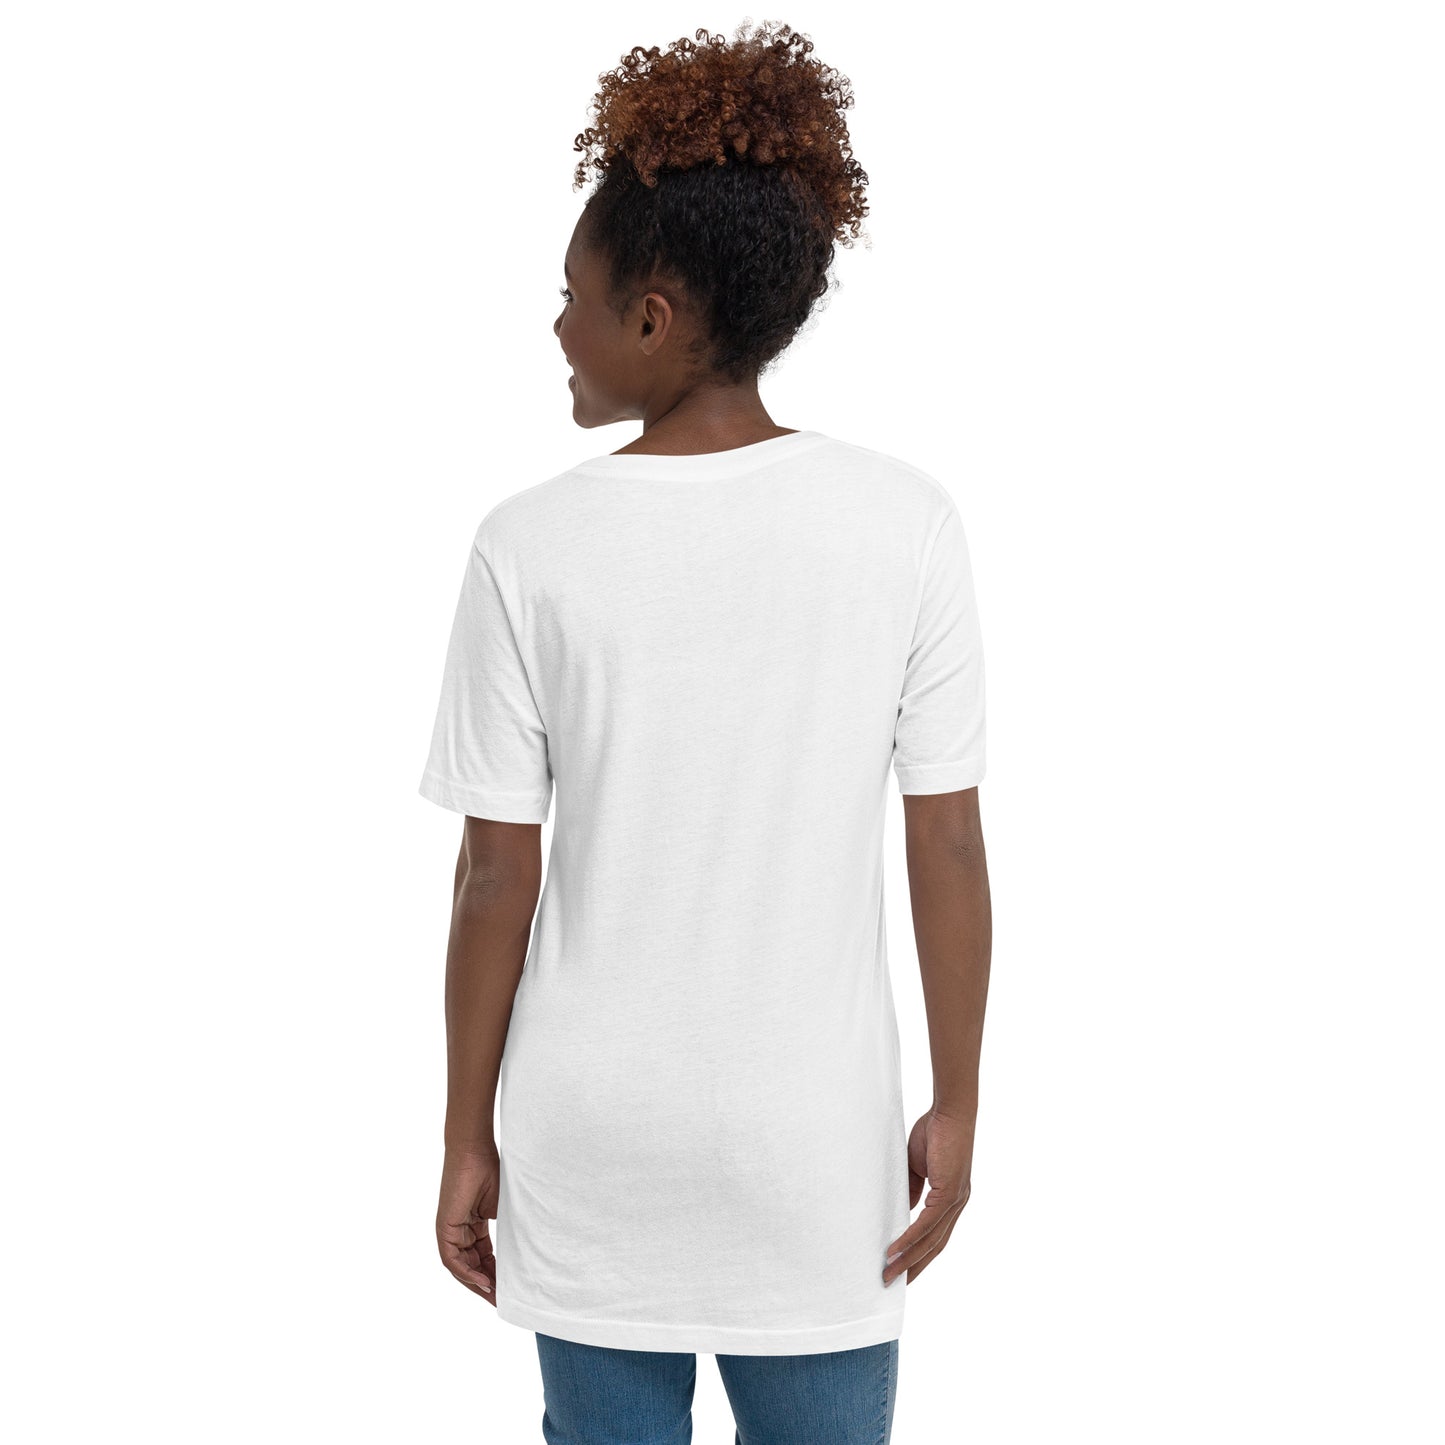 Women's Short Sleeve V-Neck T-Shirt - Aries Afro Queen